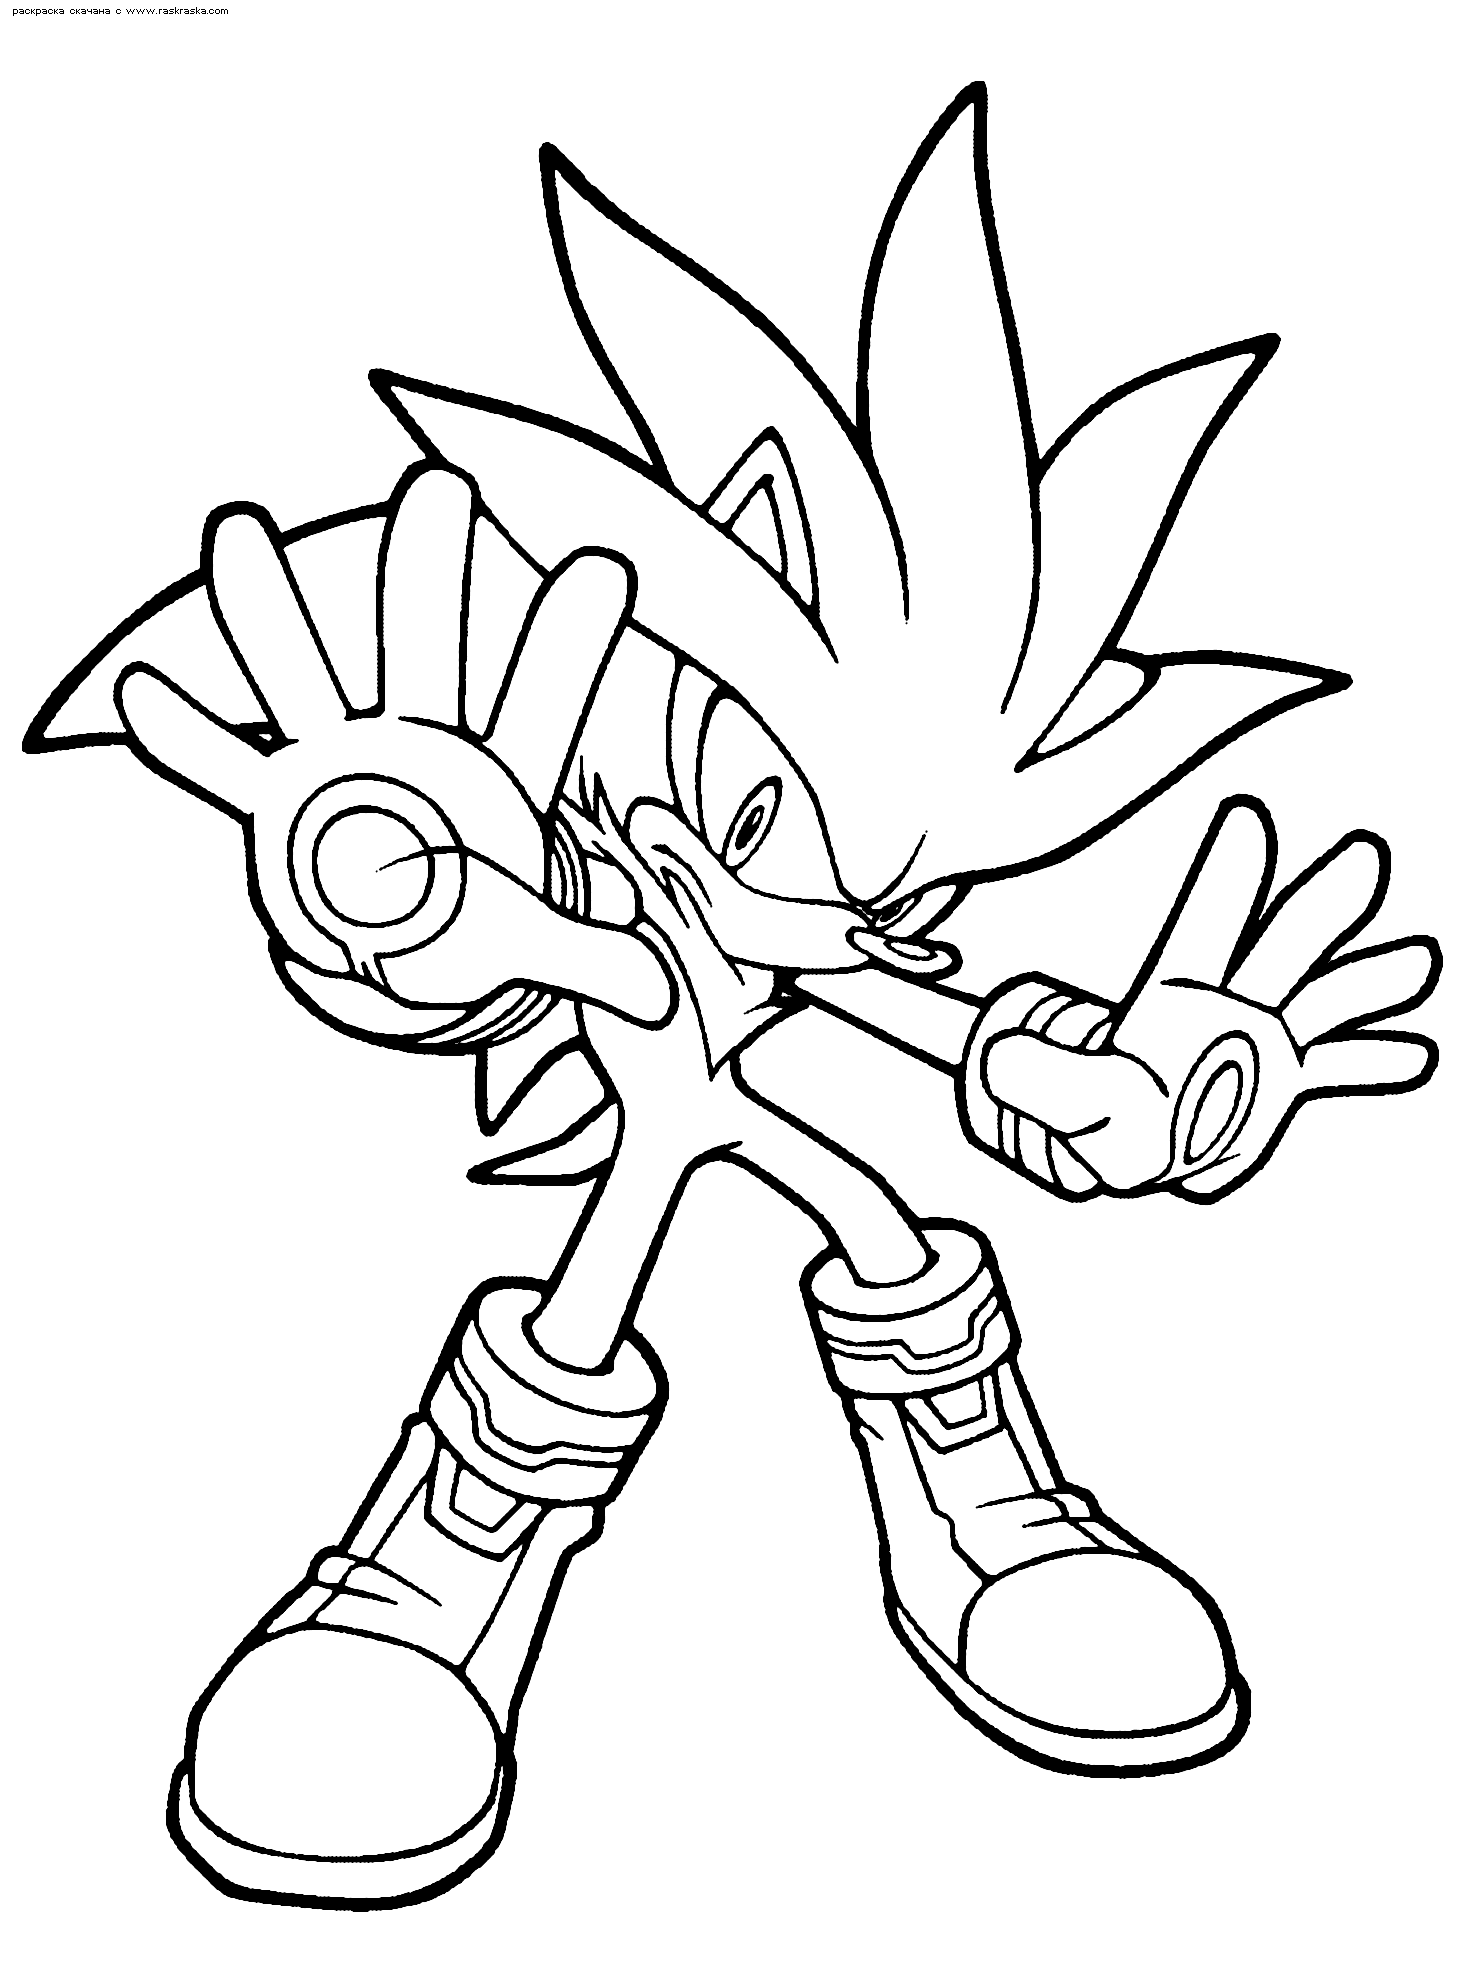 Desenho de Super Sonic para colorir - Tudodesenhos